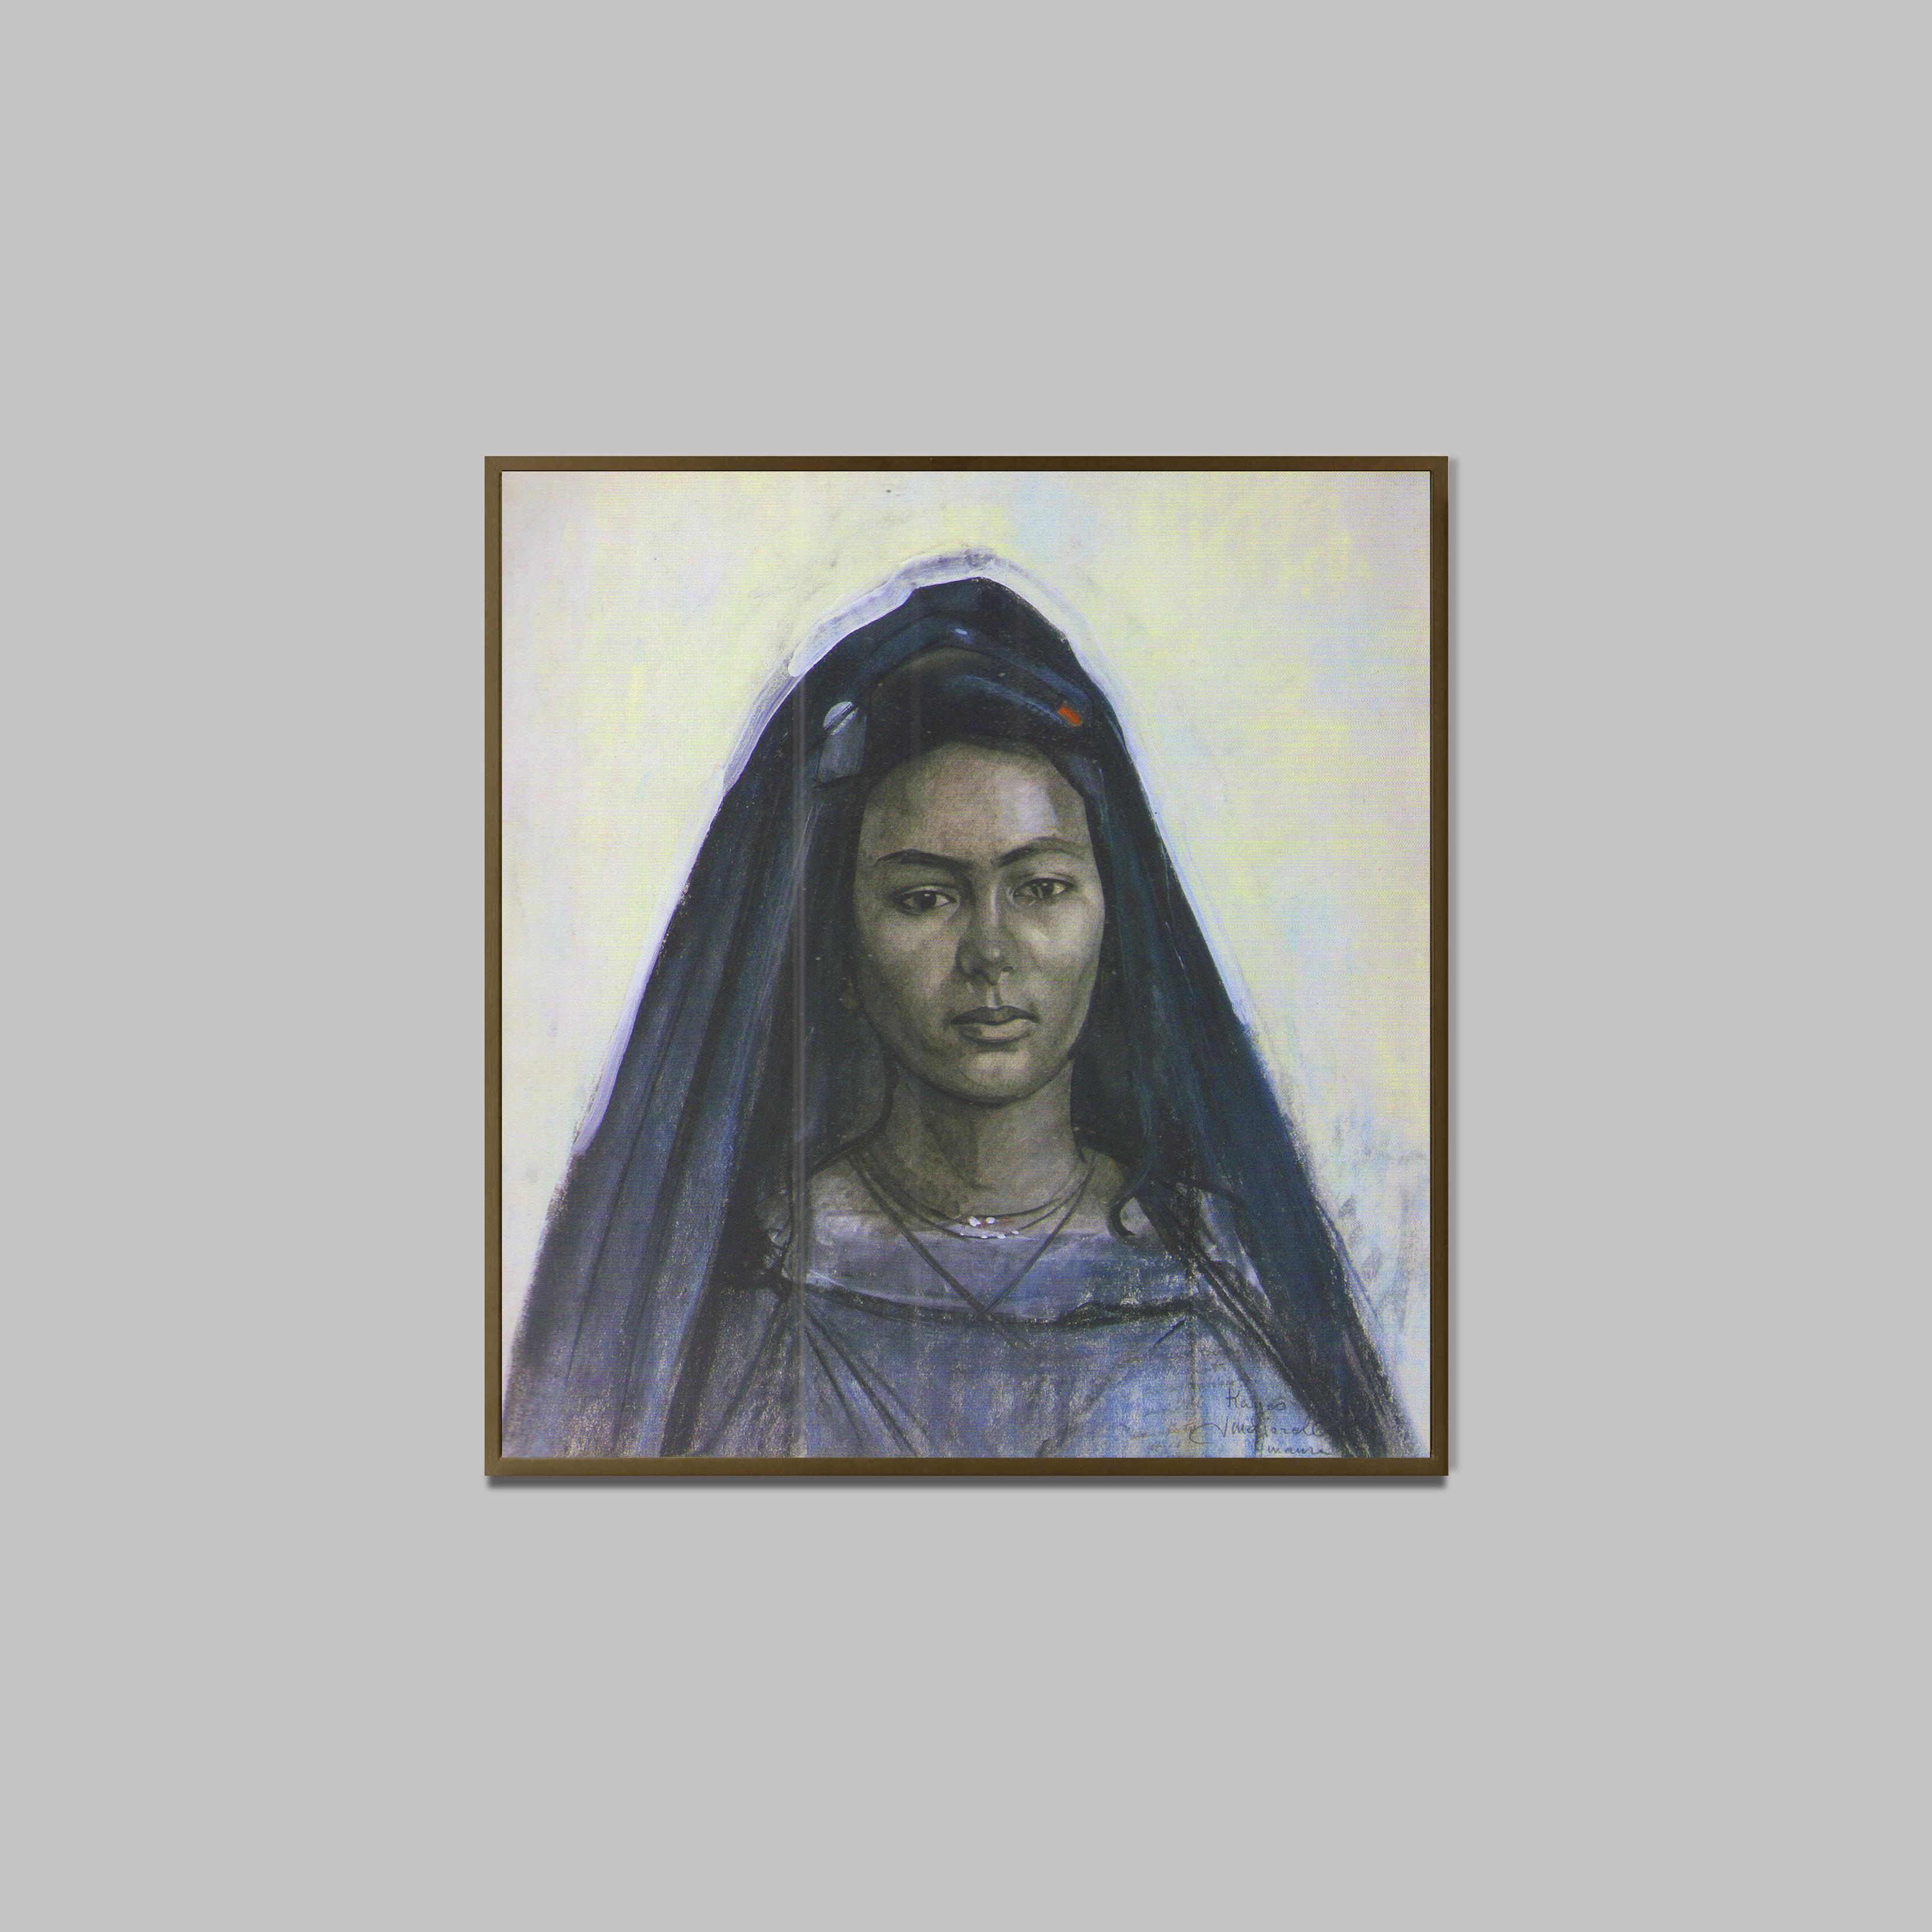 Portrait de la Maure Kayes
Technique mixte sur papier 
46 x 44 cm